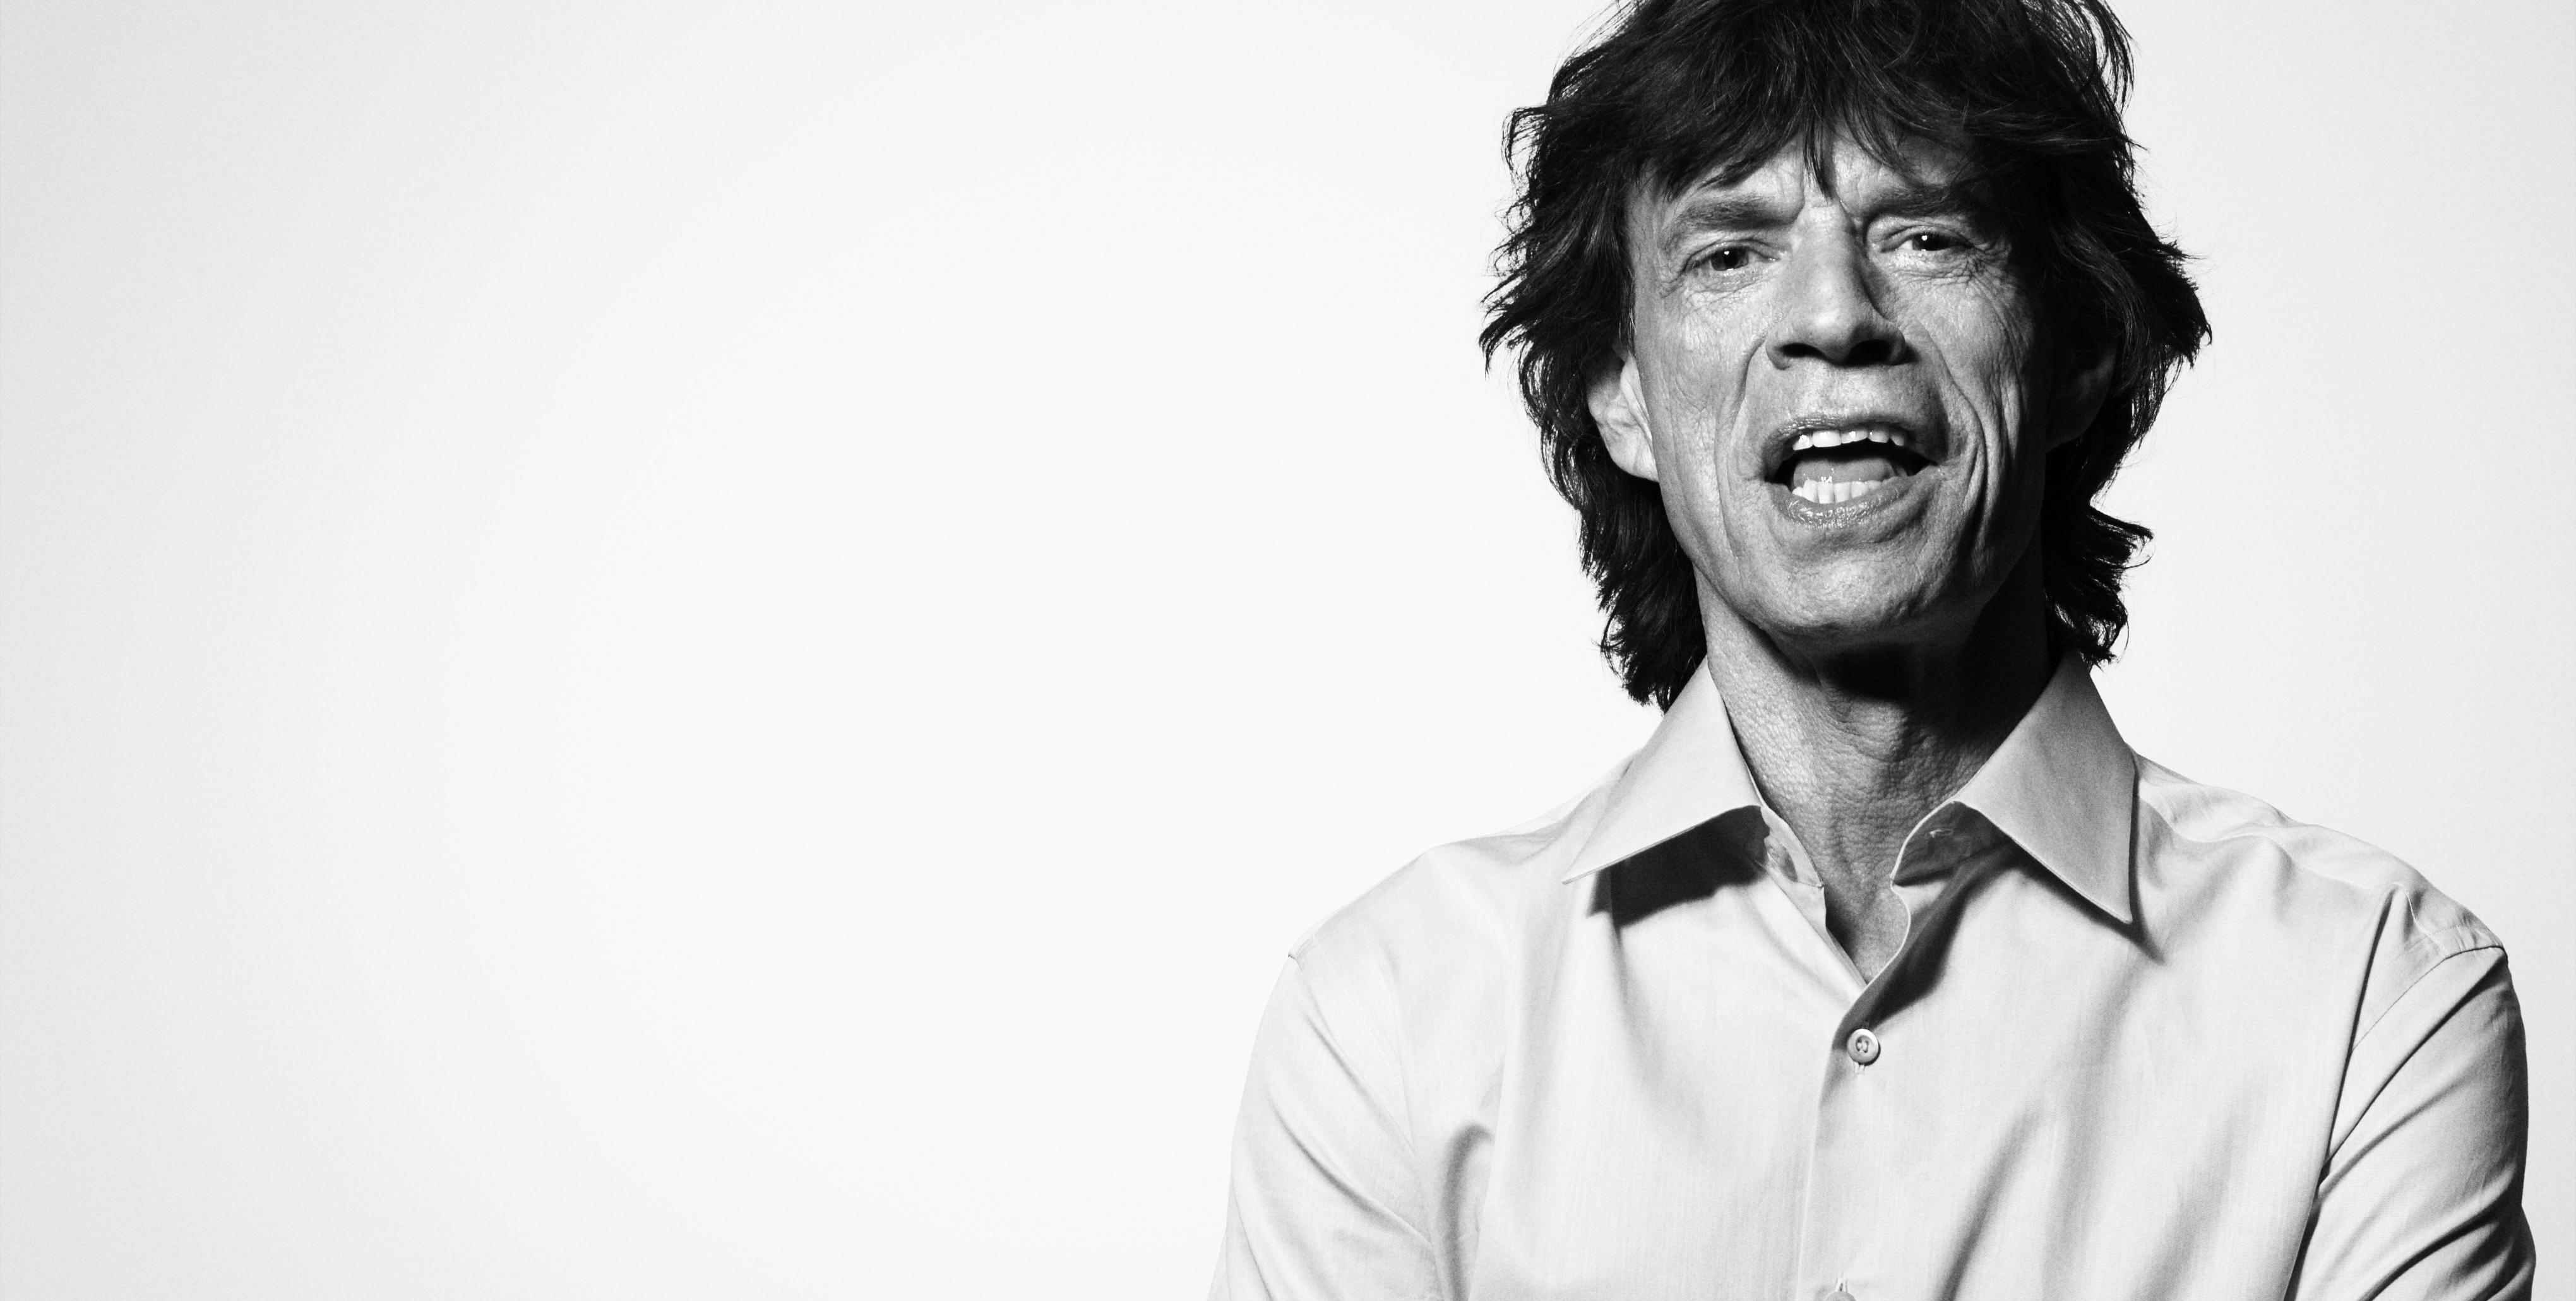 El regalo de cumpleaños de Mick Jagger: ¡dos canciones nuevas!